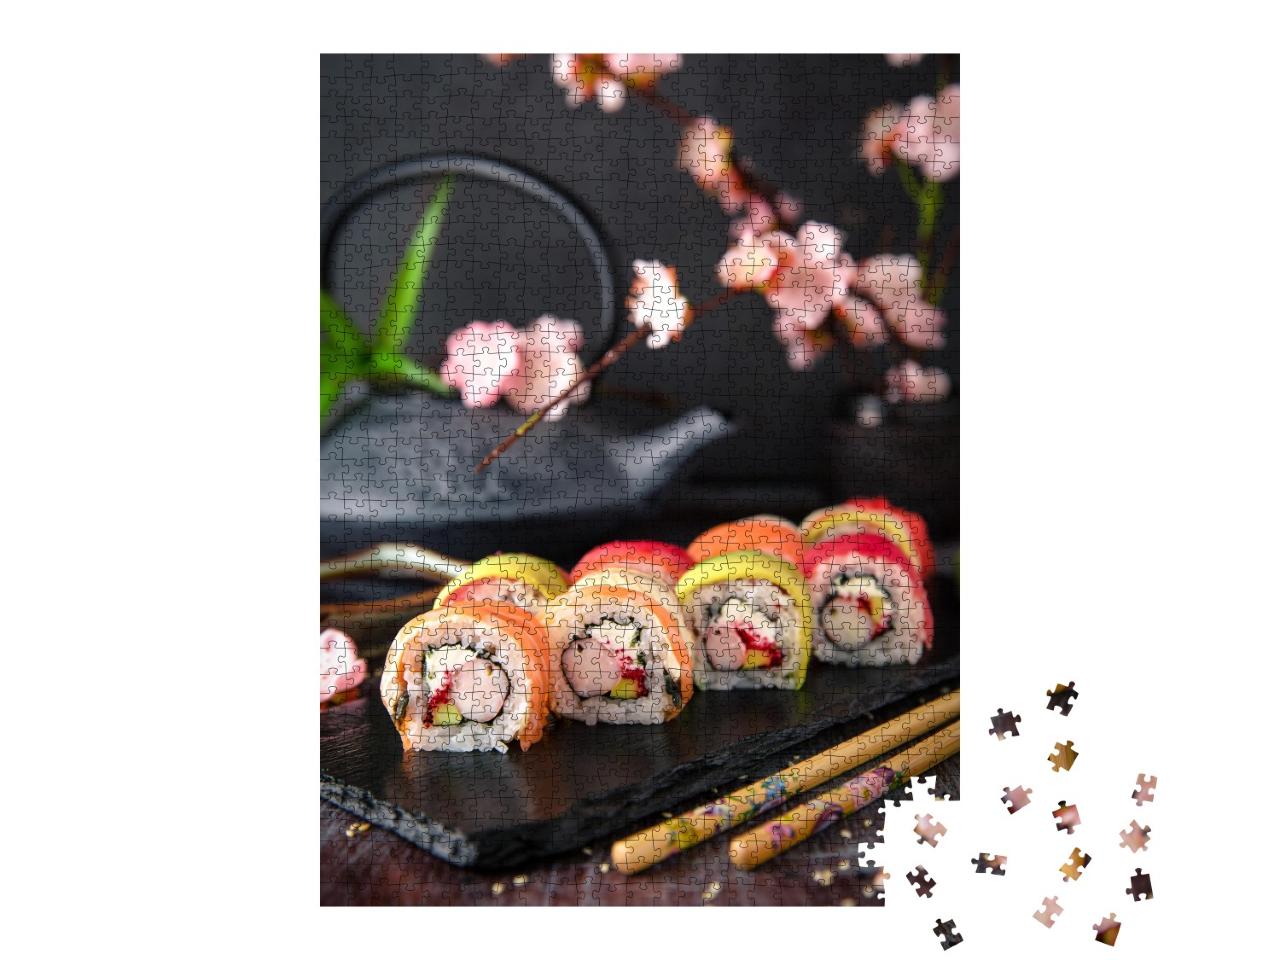 Puzzle de 1000 pièces « Rouleau de sushi arc-en-ciel au saumon, thon, avocat, crevette géante et fromage frais »